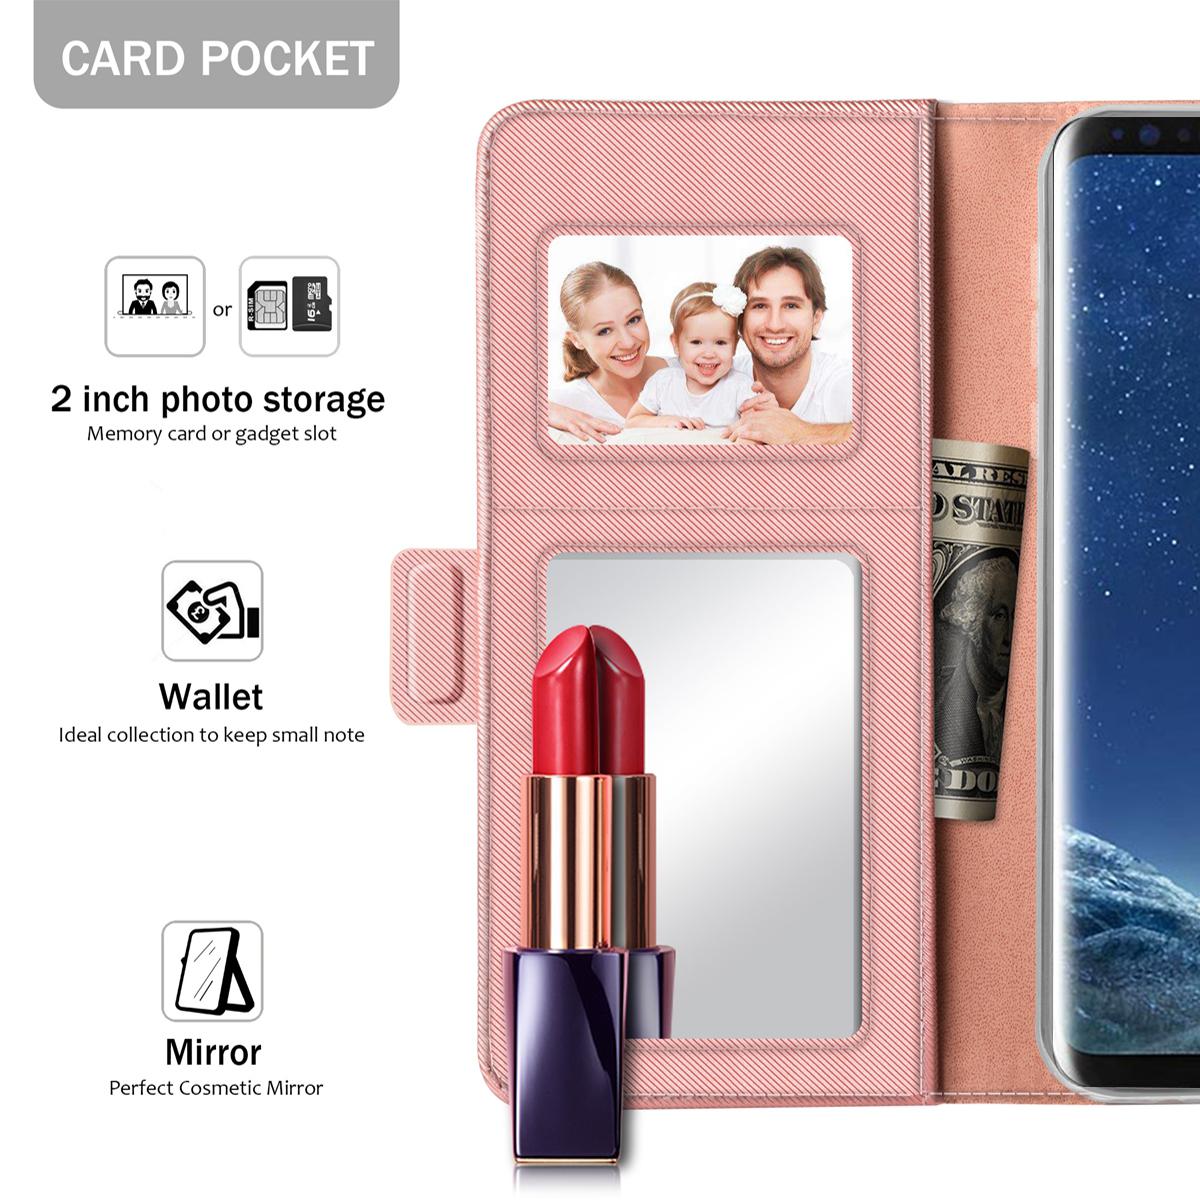 Samsung Galaxy S8 Portemonnaie-Hülle Spiegel Rosa